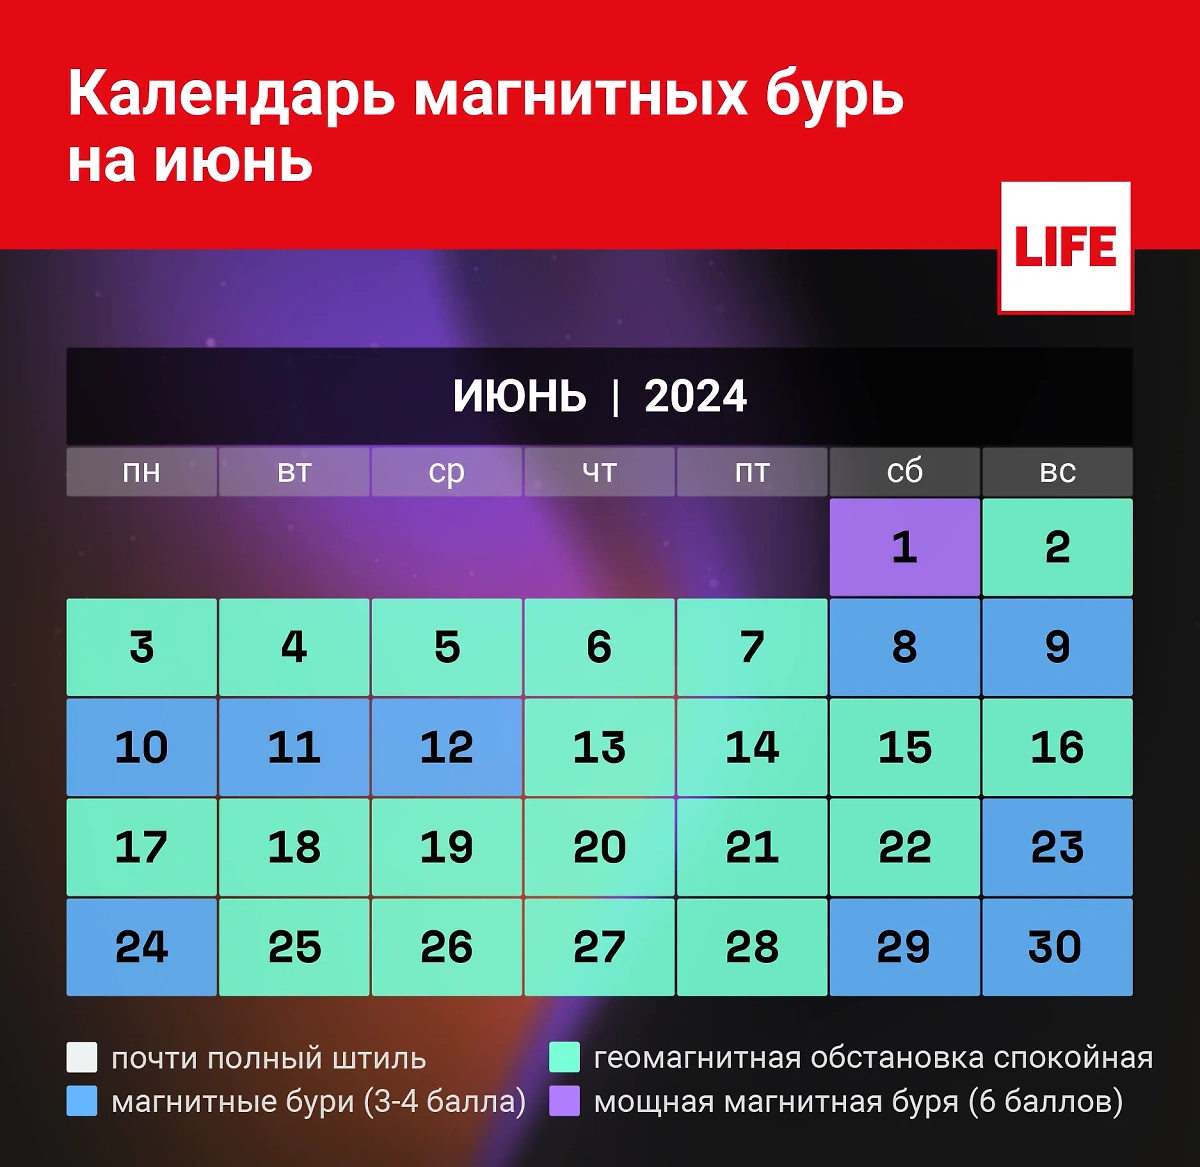 Календарь магнитных бурь на июнь 2024 года, прогноз на каждый день. Инфографика © Life.ru